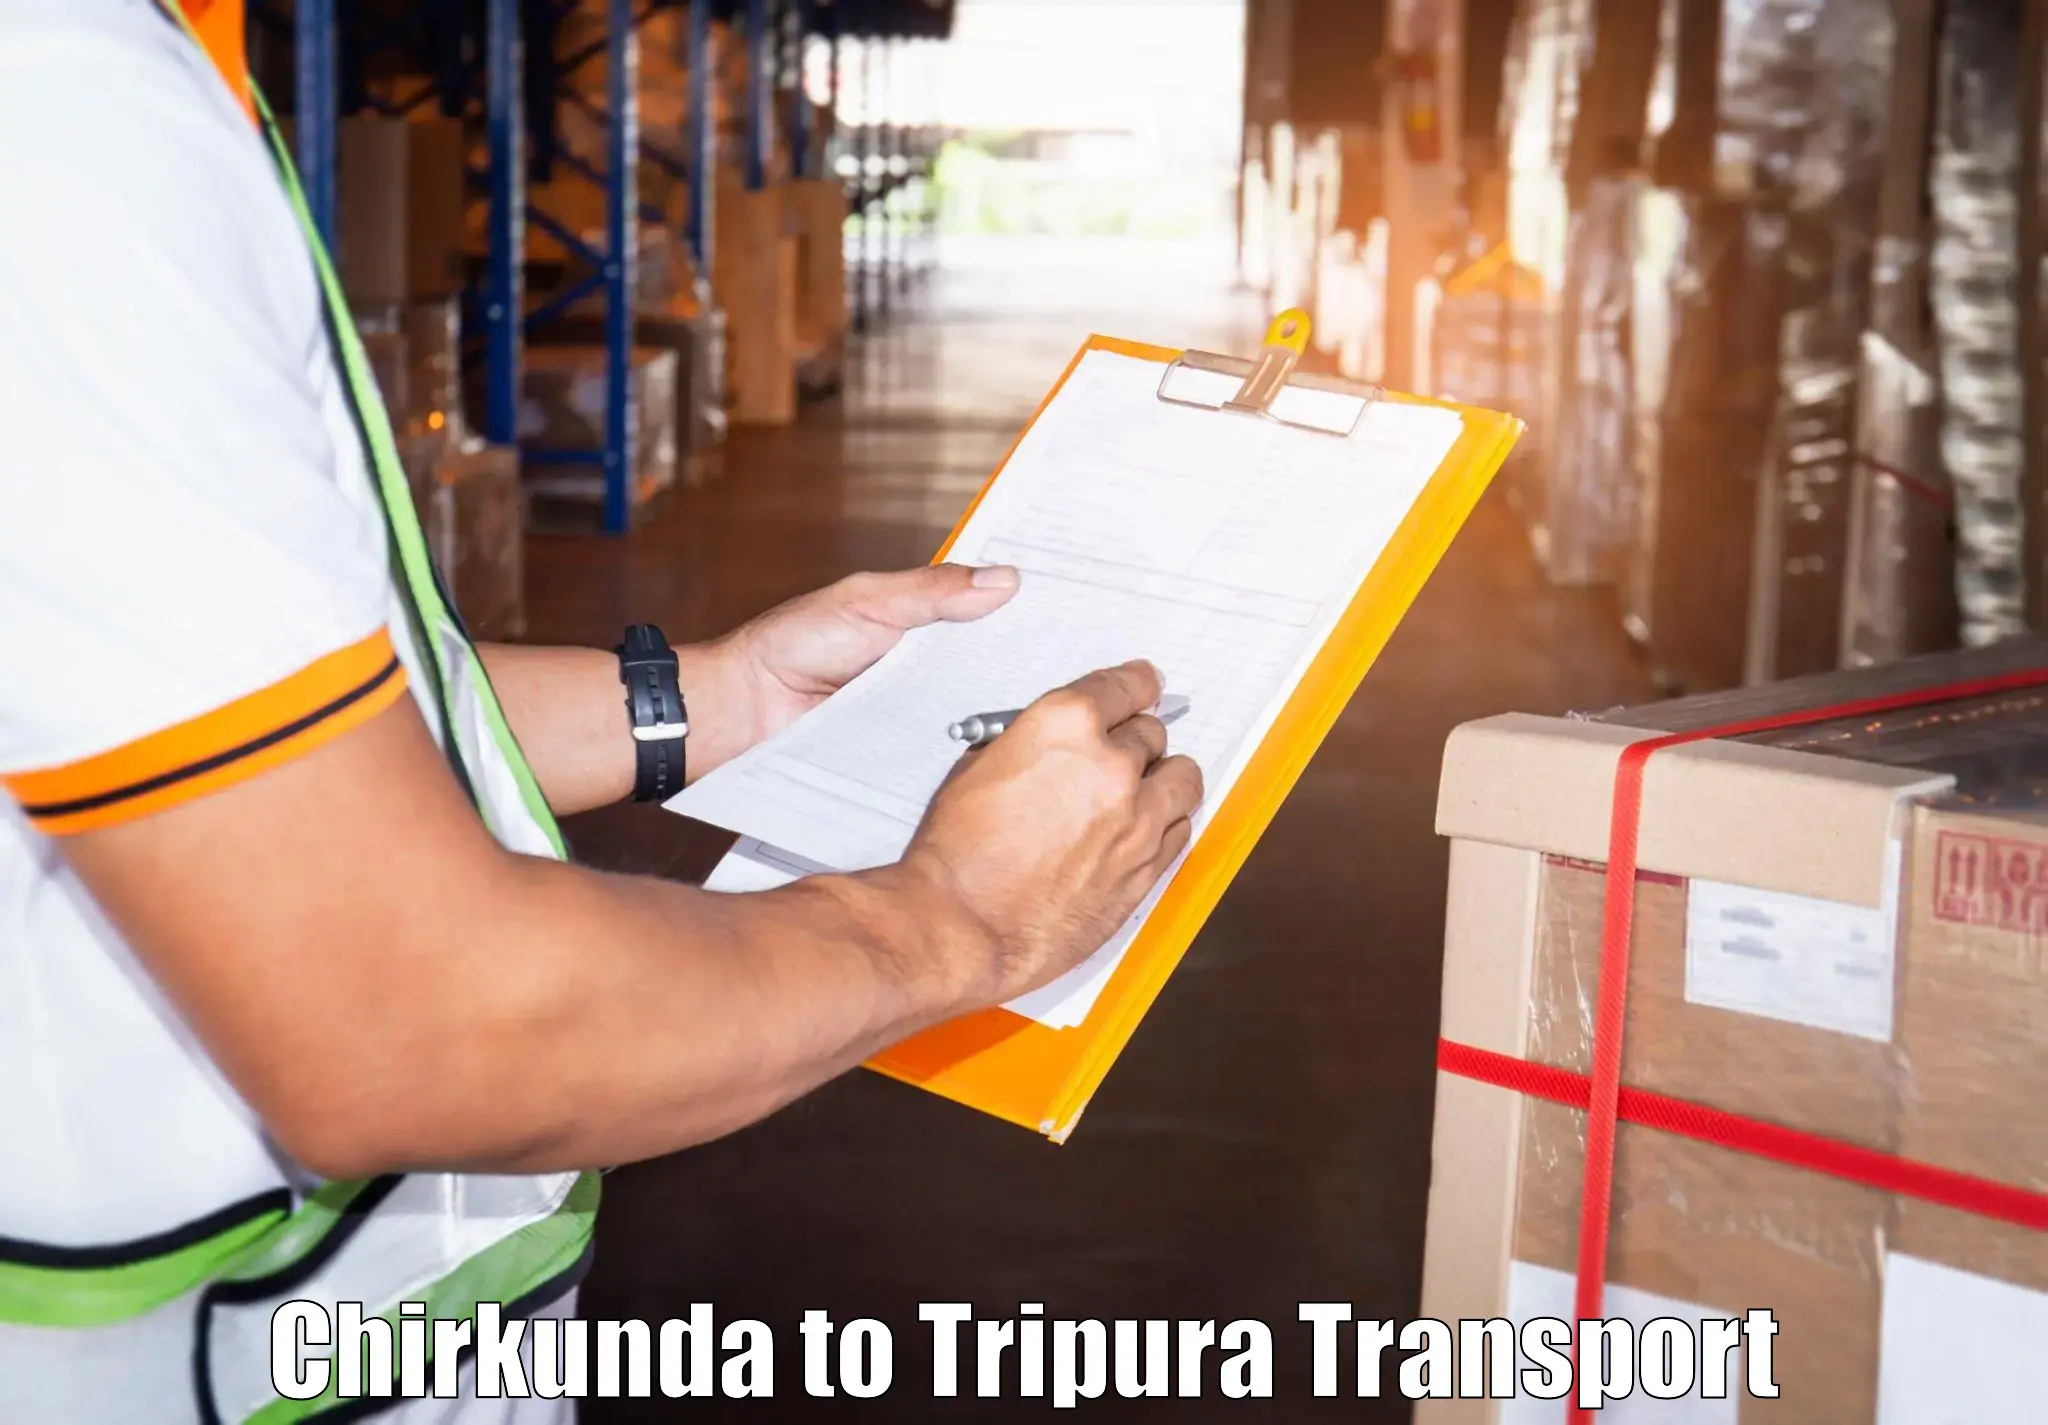 Container transport service Chirkunda to Amarpur Gomati